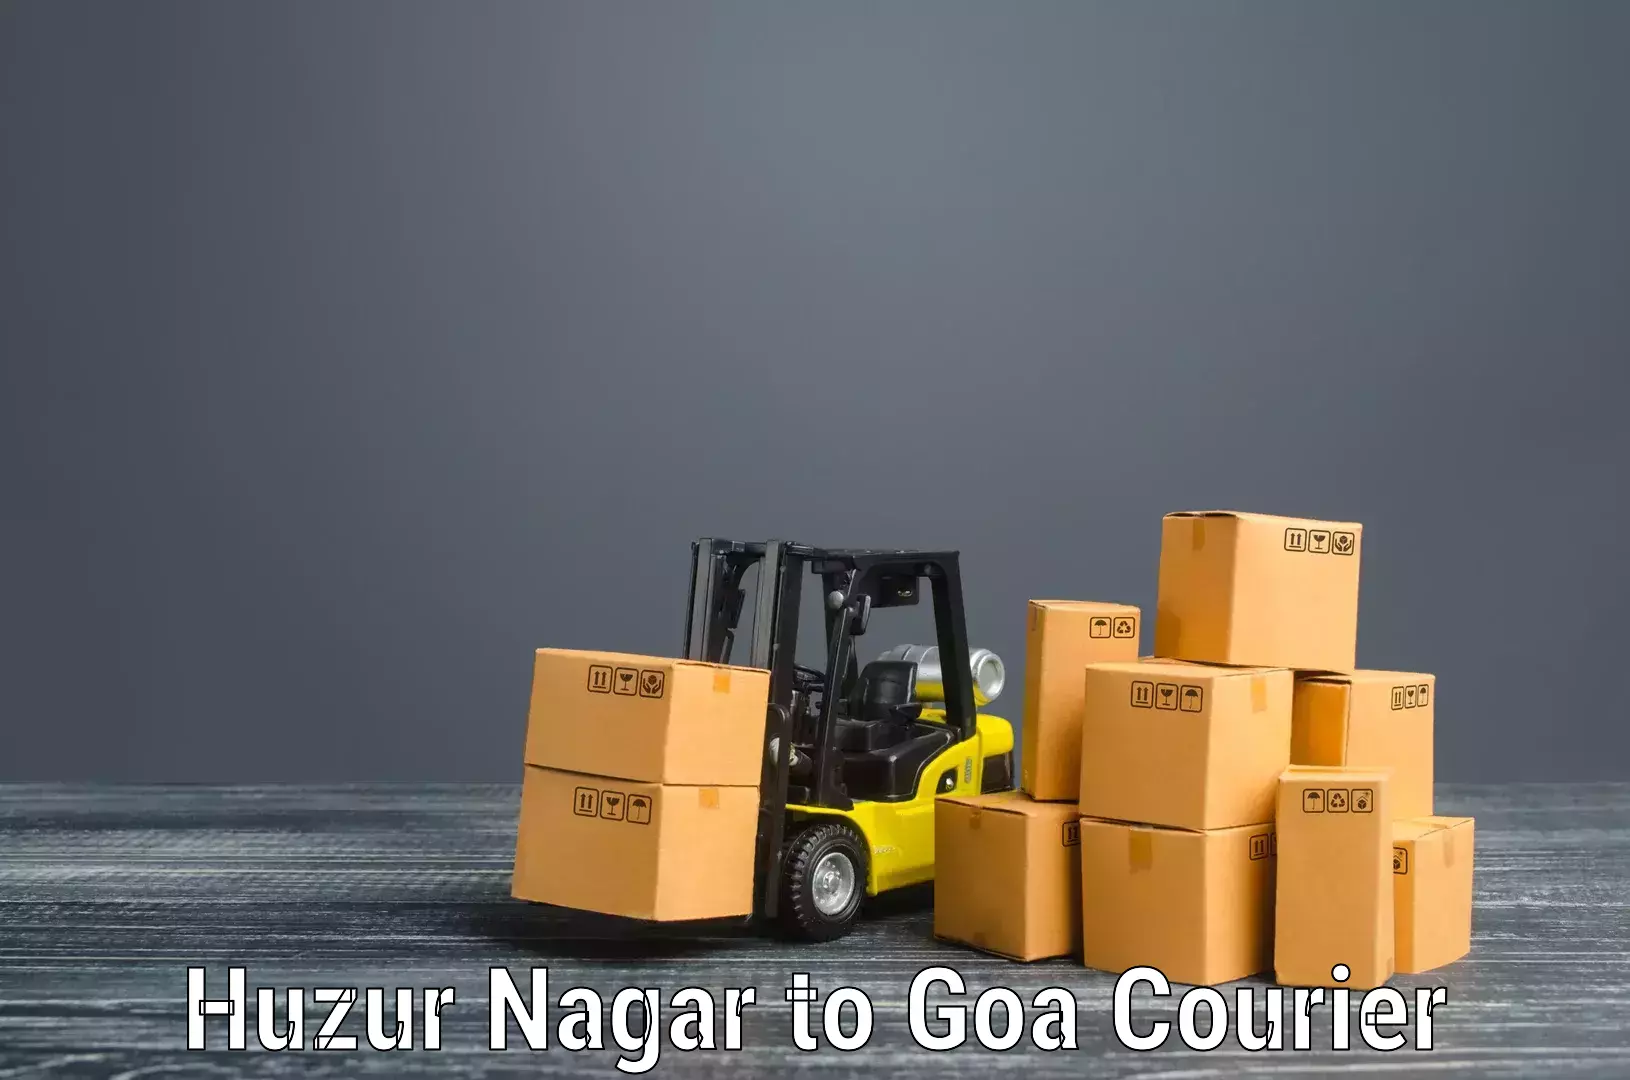 Stress-free moving in Huzur Nagar to Goa